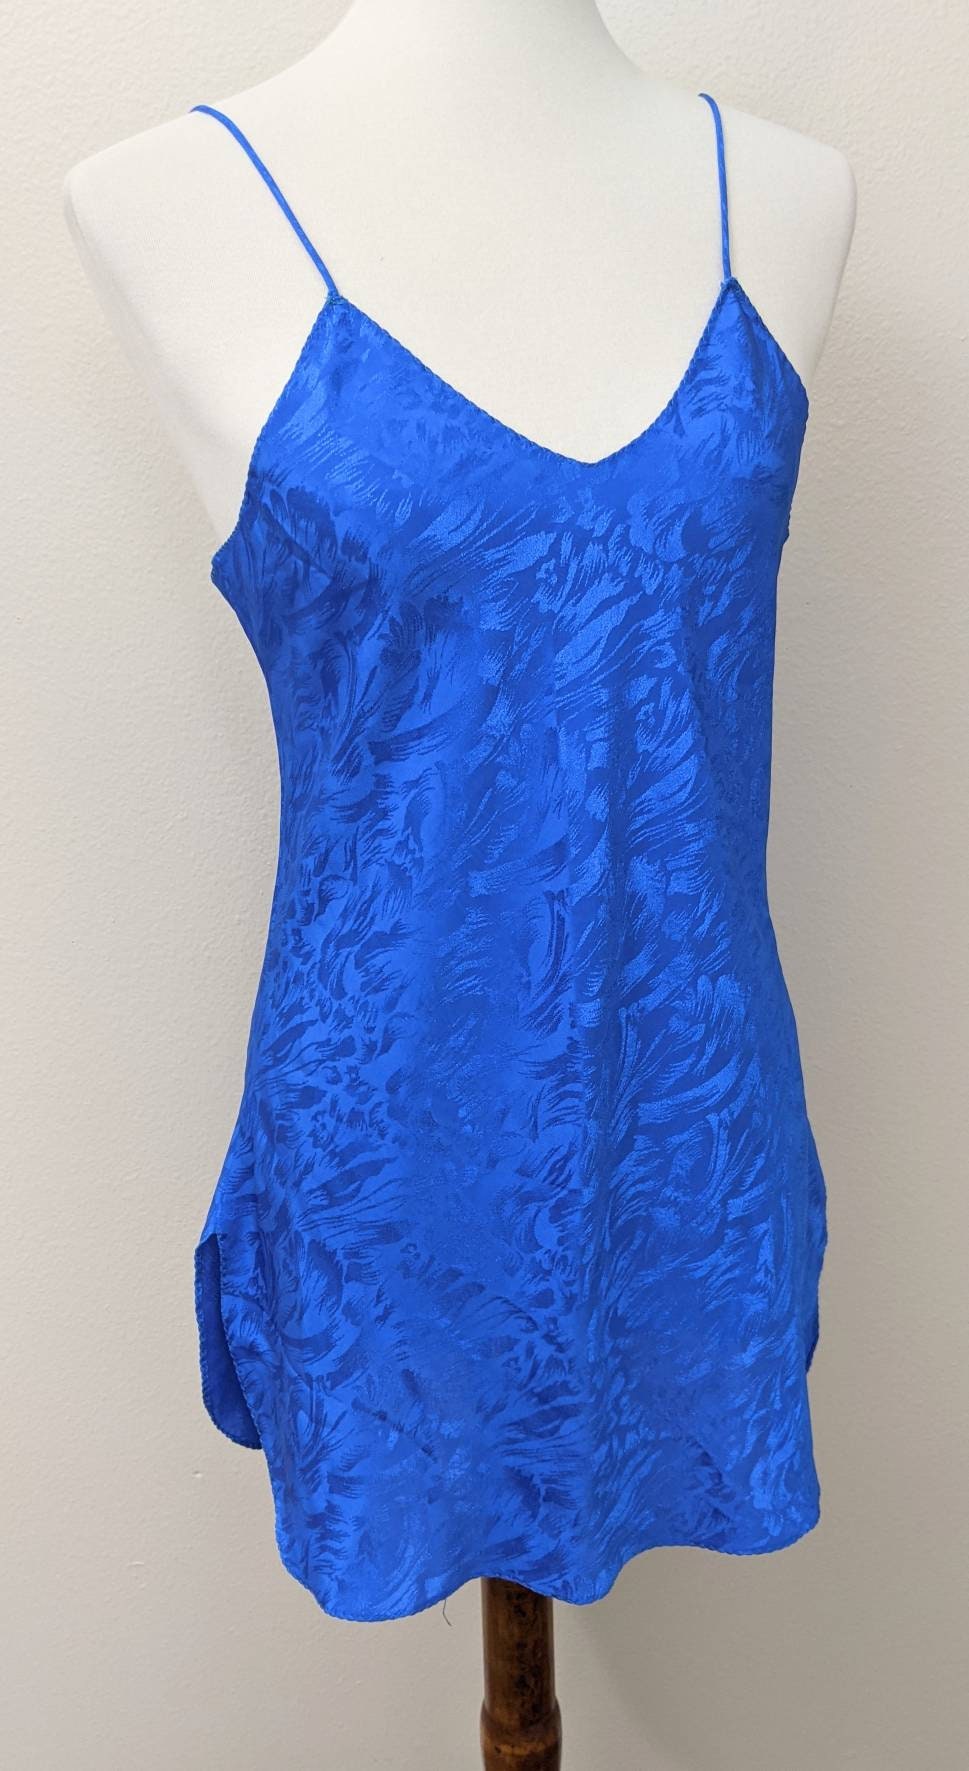 Blue Babydoll Nightwear Sexy Chemise Anniversary Sleepwear | Etsy